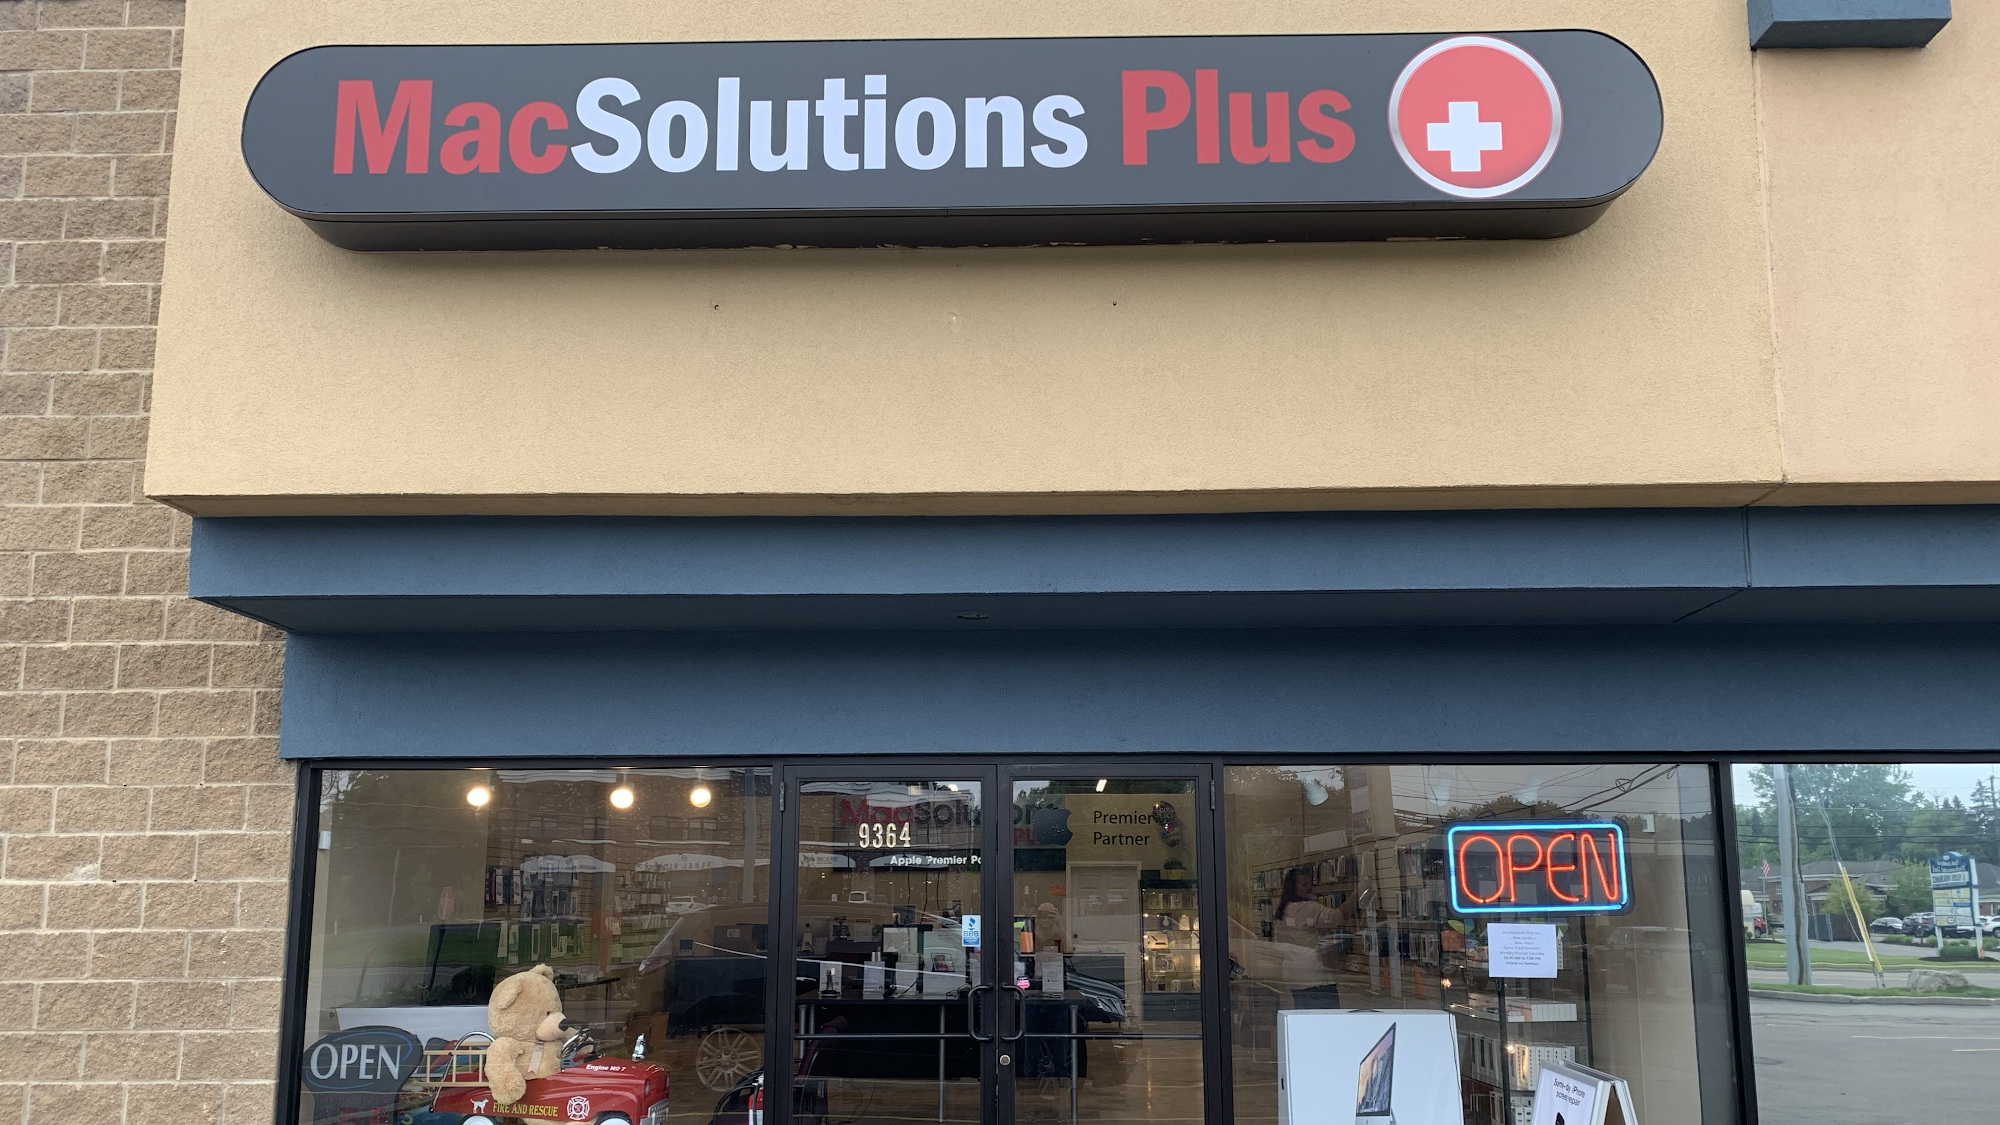 MacSolutions Plus - Apple Authorized Service Center